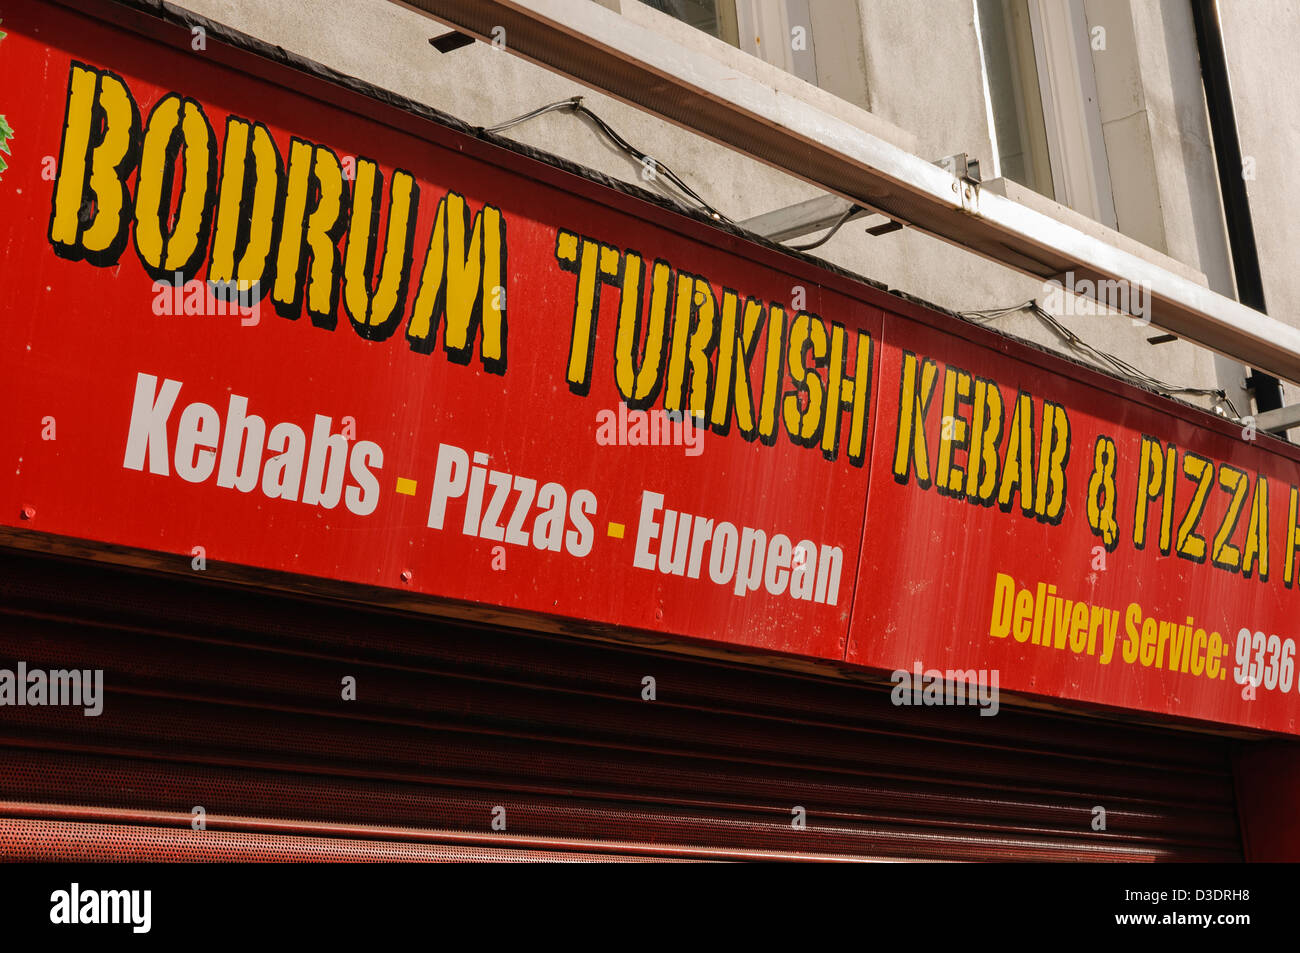 Bodrum türkische Kebab und Pizza Shop anmelden Stockfoto